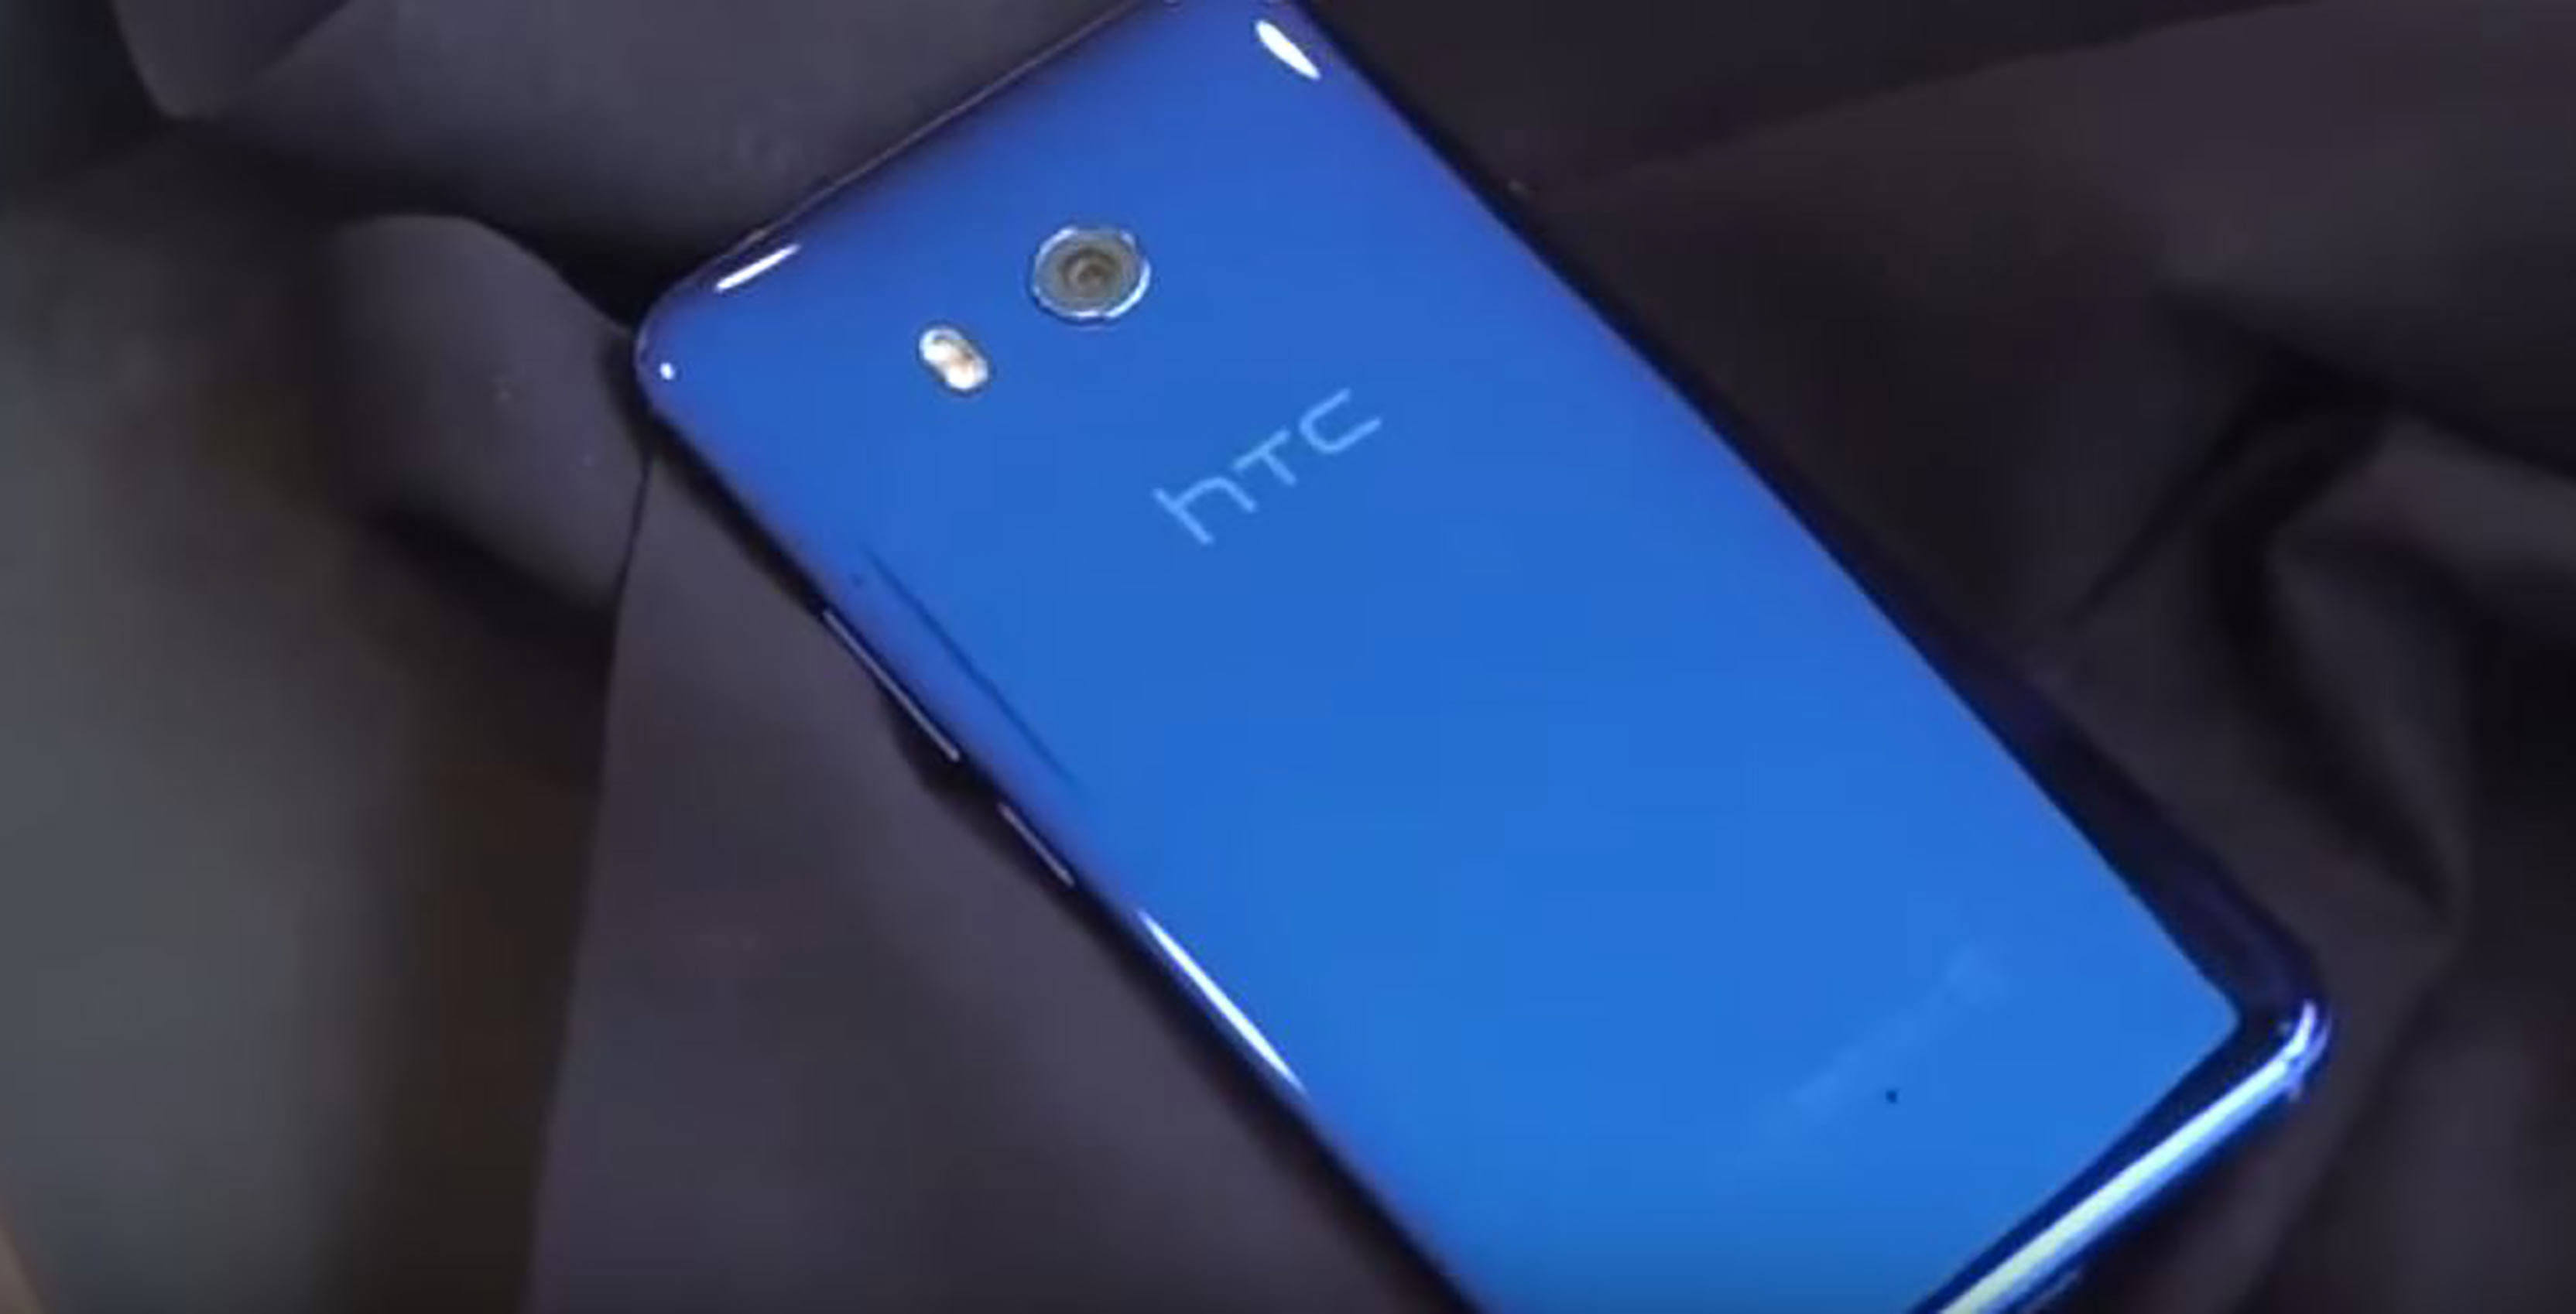 HTC lanzará smartphones con doble cámara en 2018